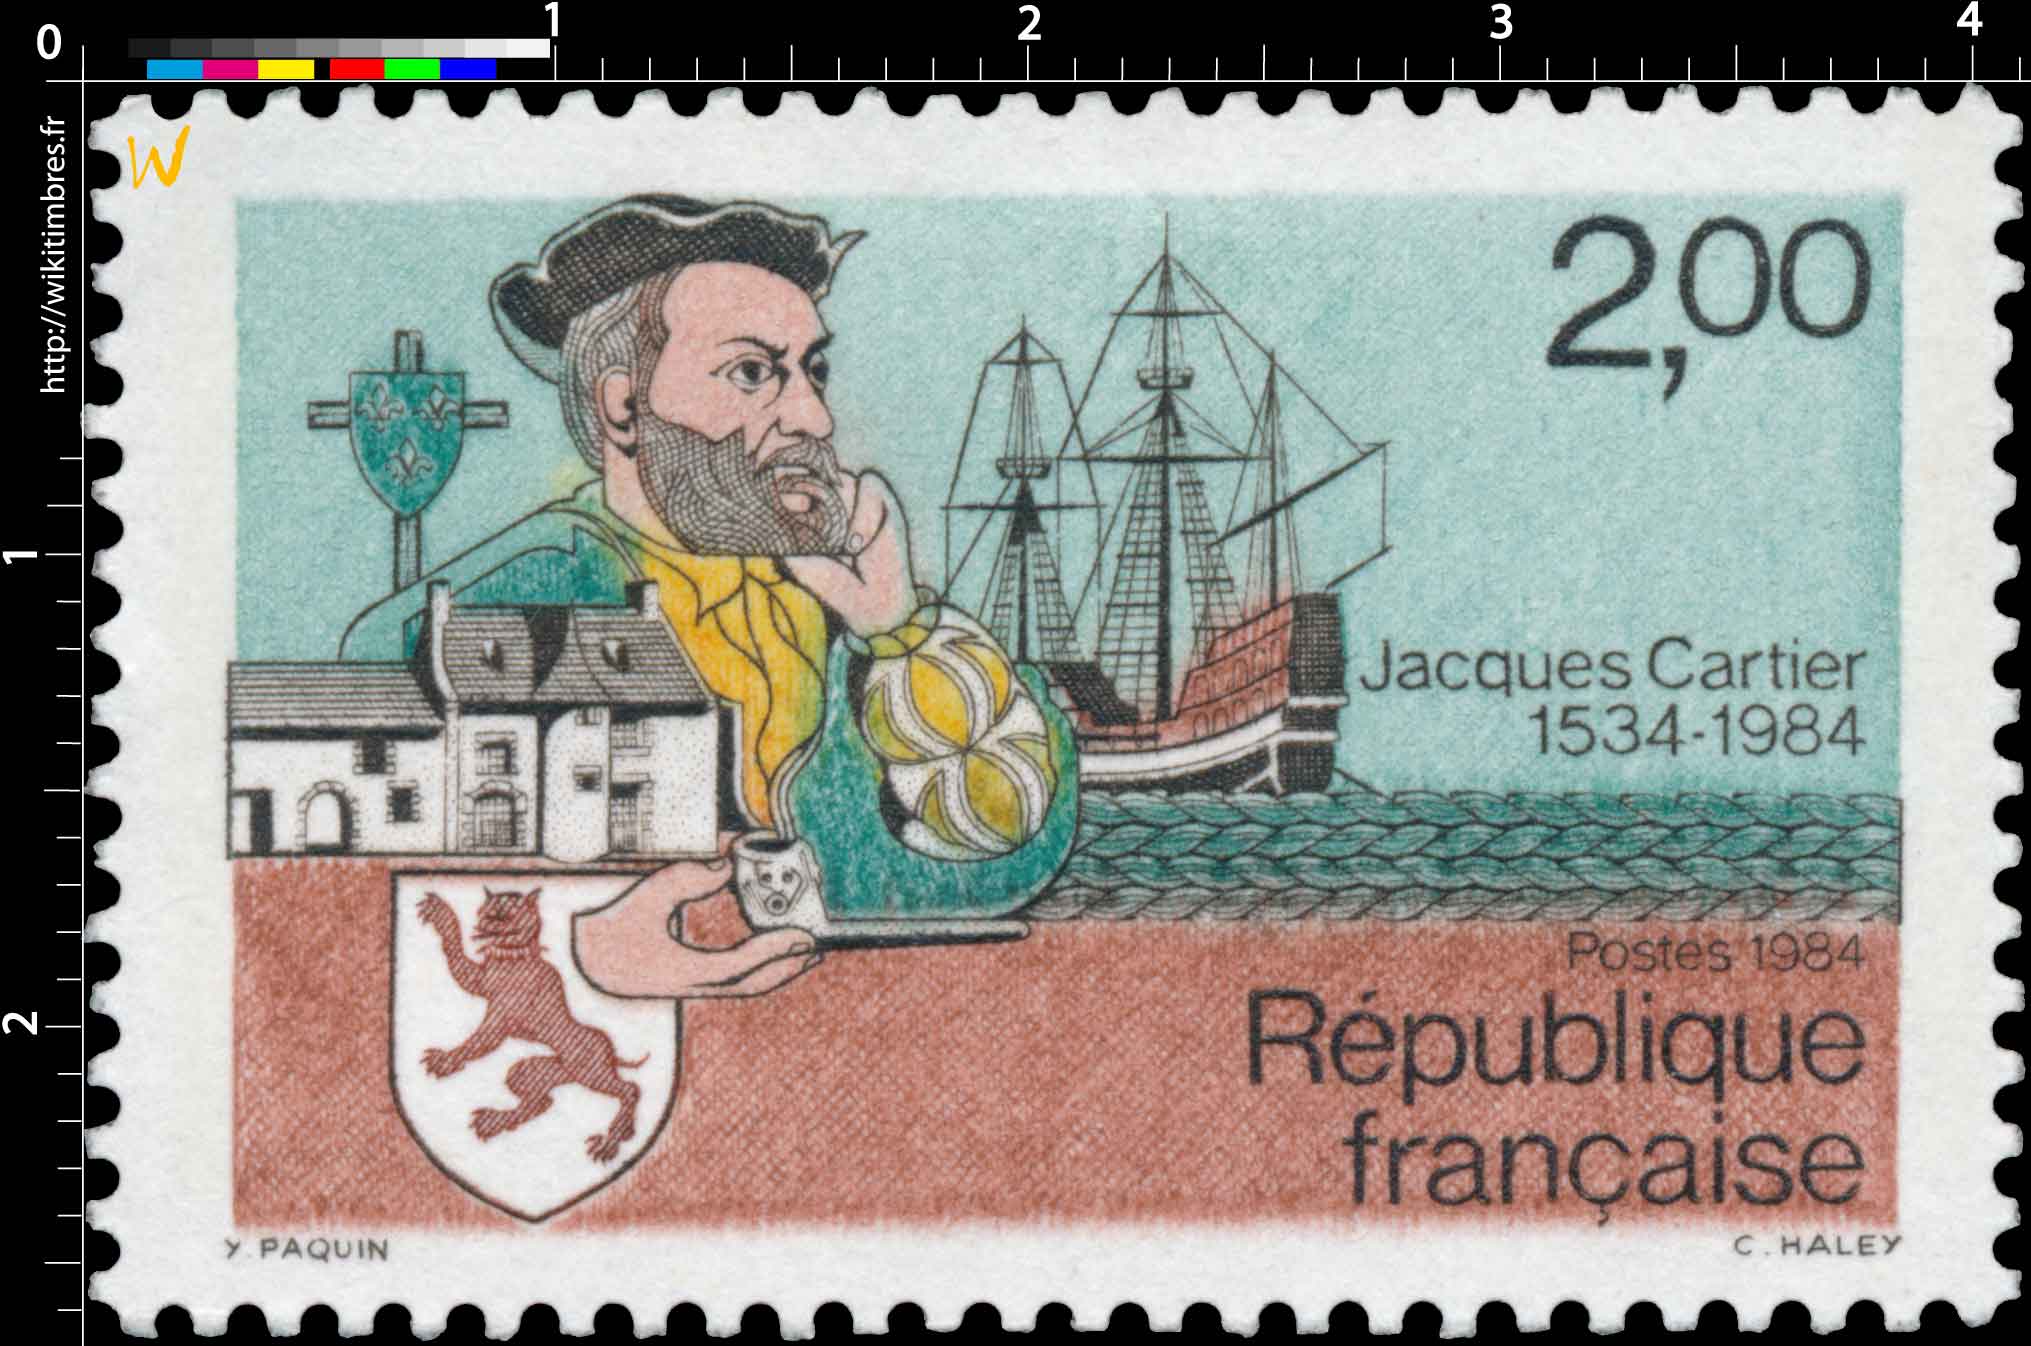 1984 Jacques Cartier 1534-1984